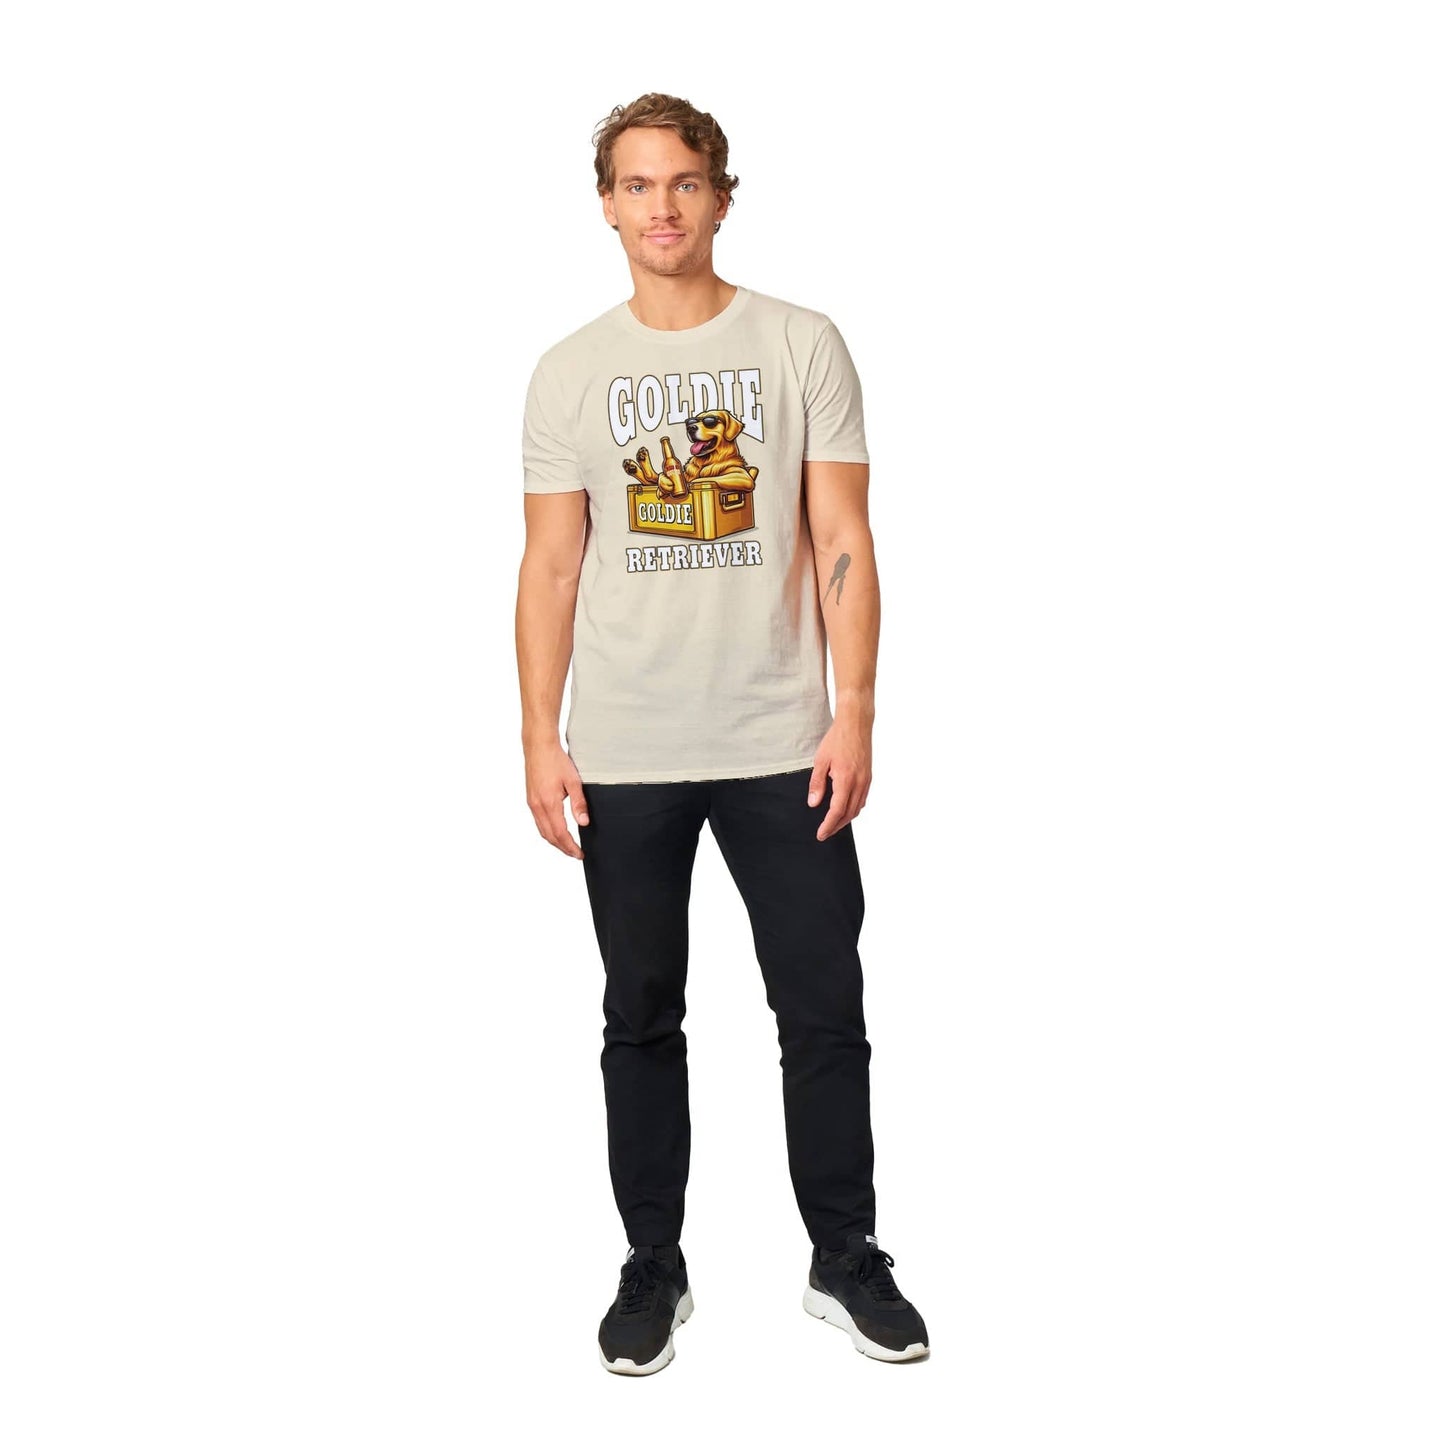 Goldie Retriever T-Shirt Australia Online Color